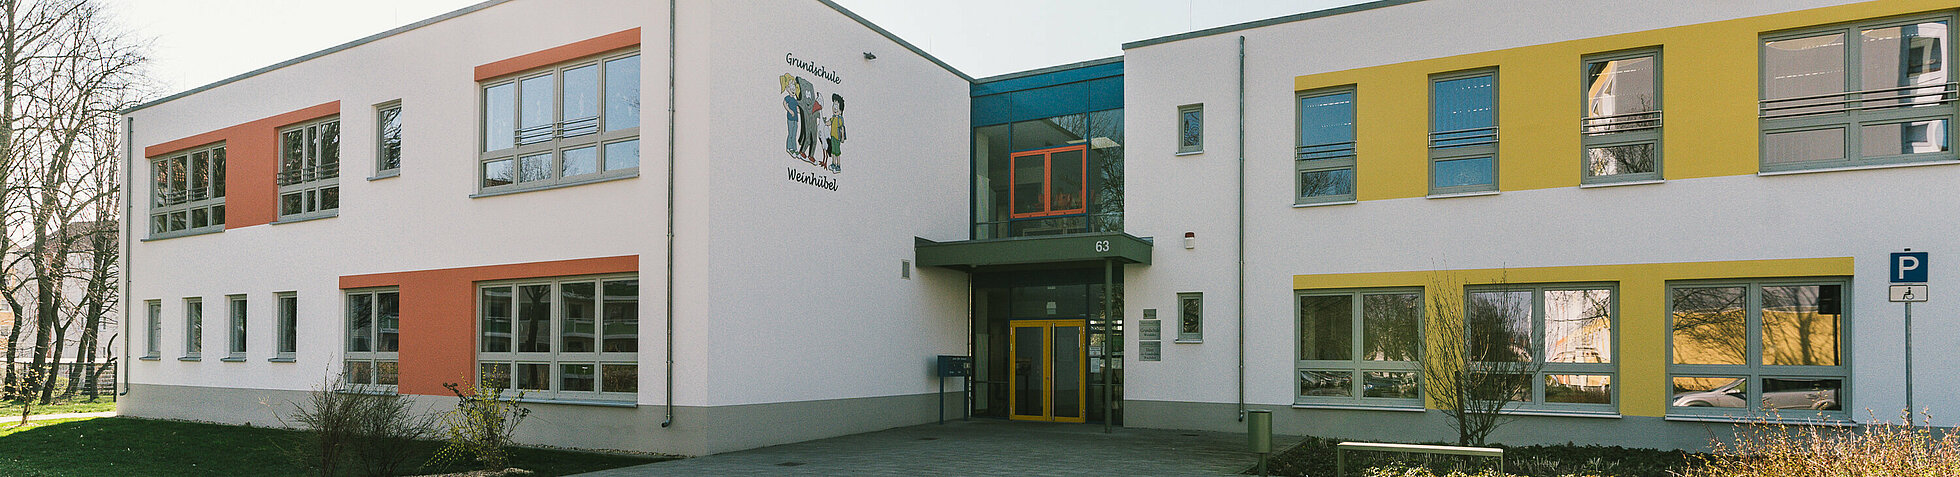 Von Architekturfirma AIP Görlitz gebaute Grundschule in Weinhübel